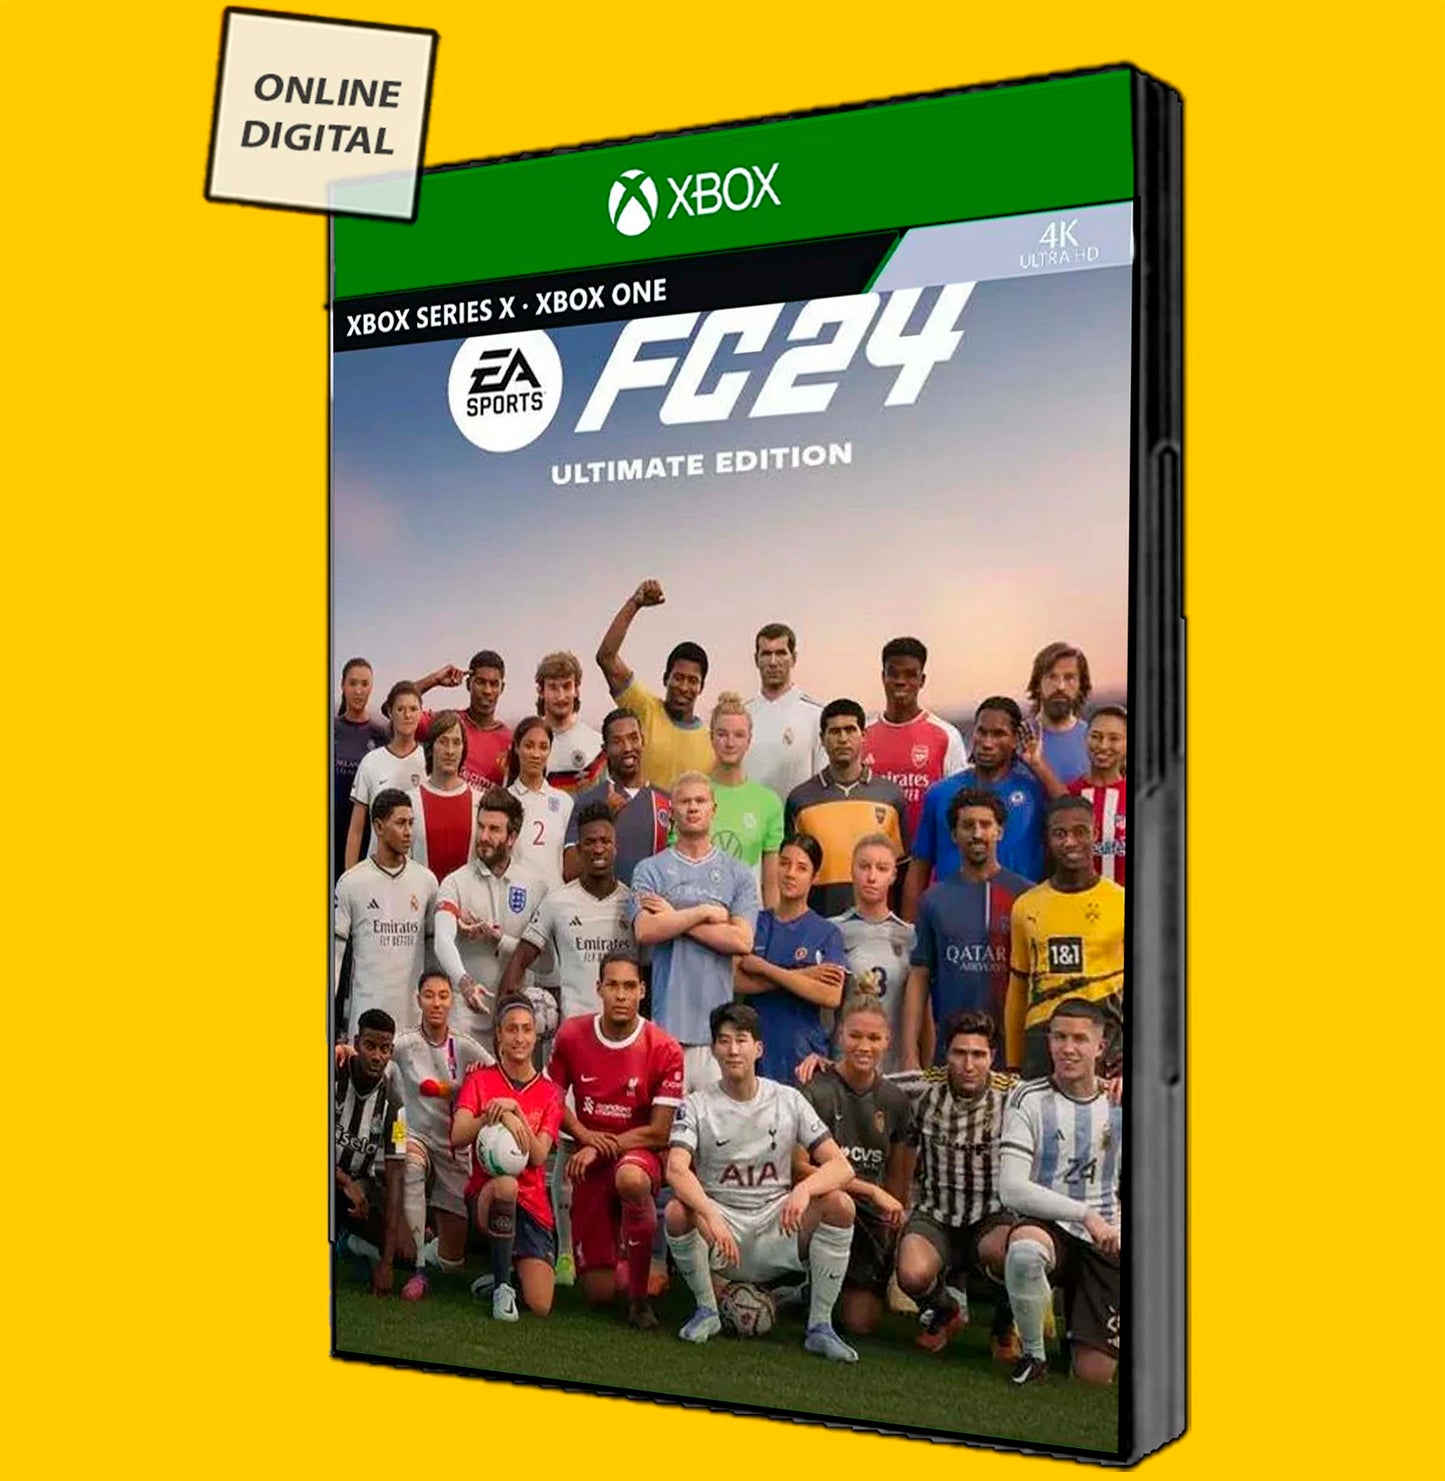 EA SPORTS 24 Ultimate Mídia Digital Xbox FIFA 24